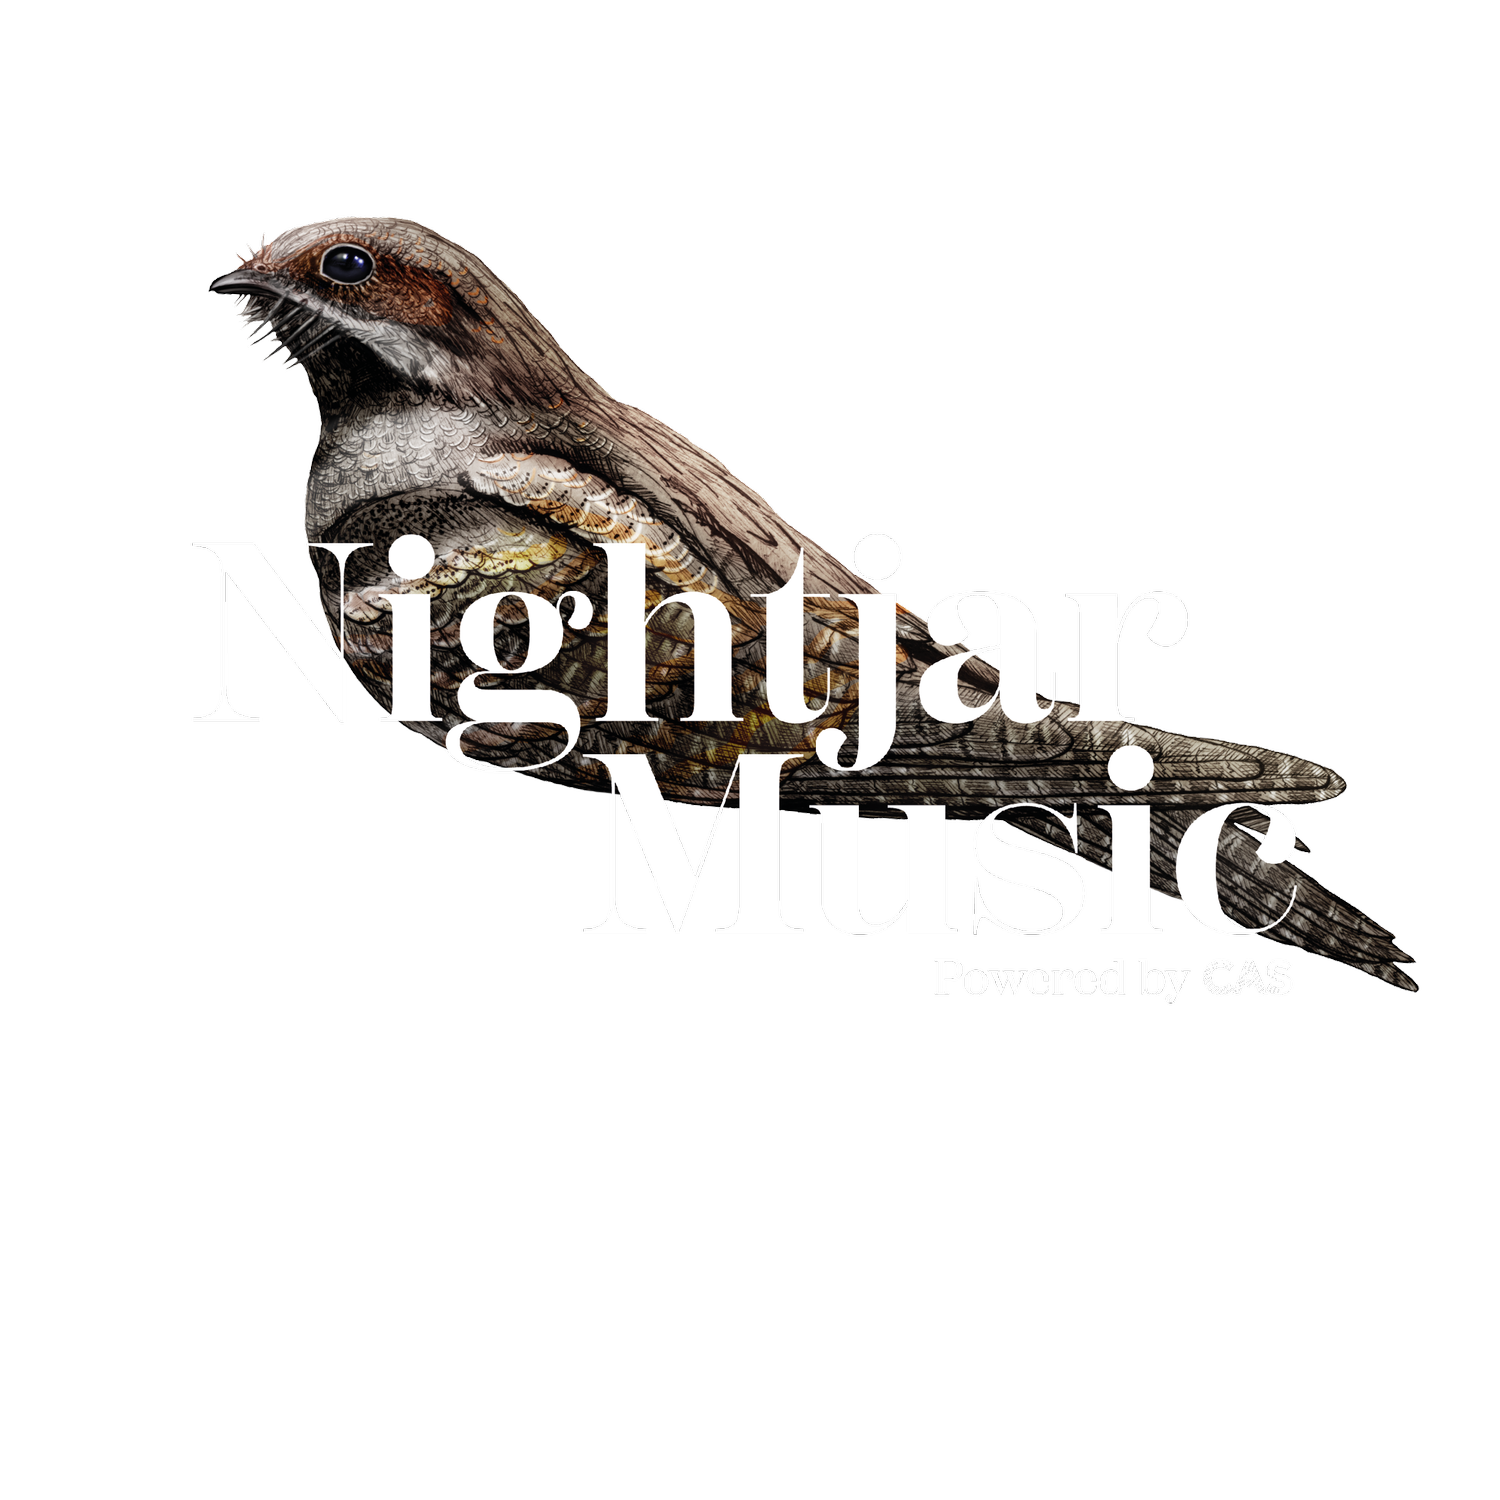 Nightjar Music